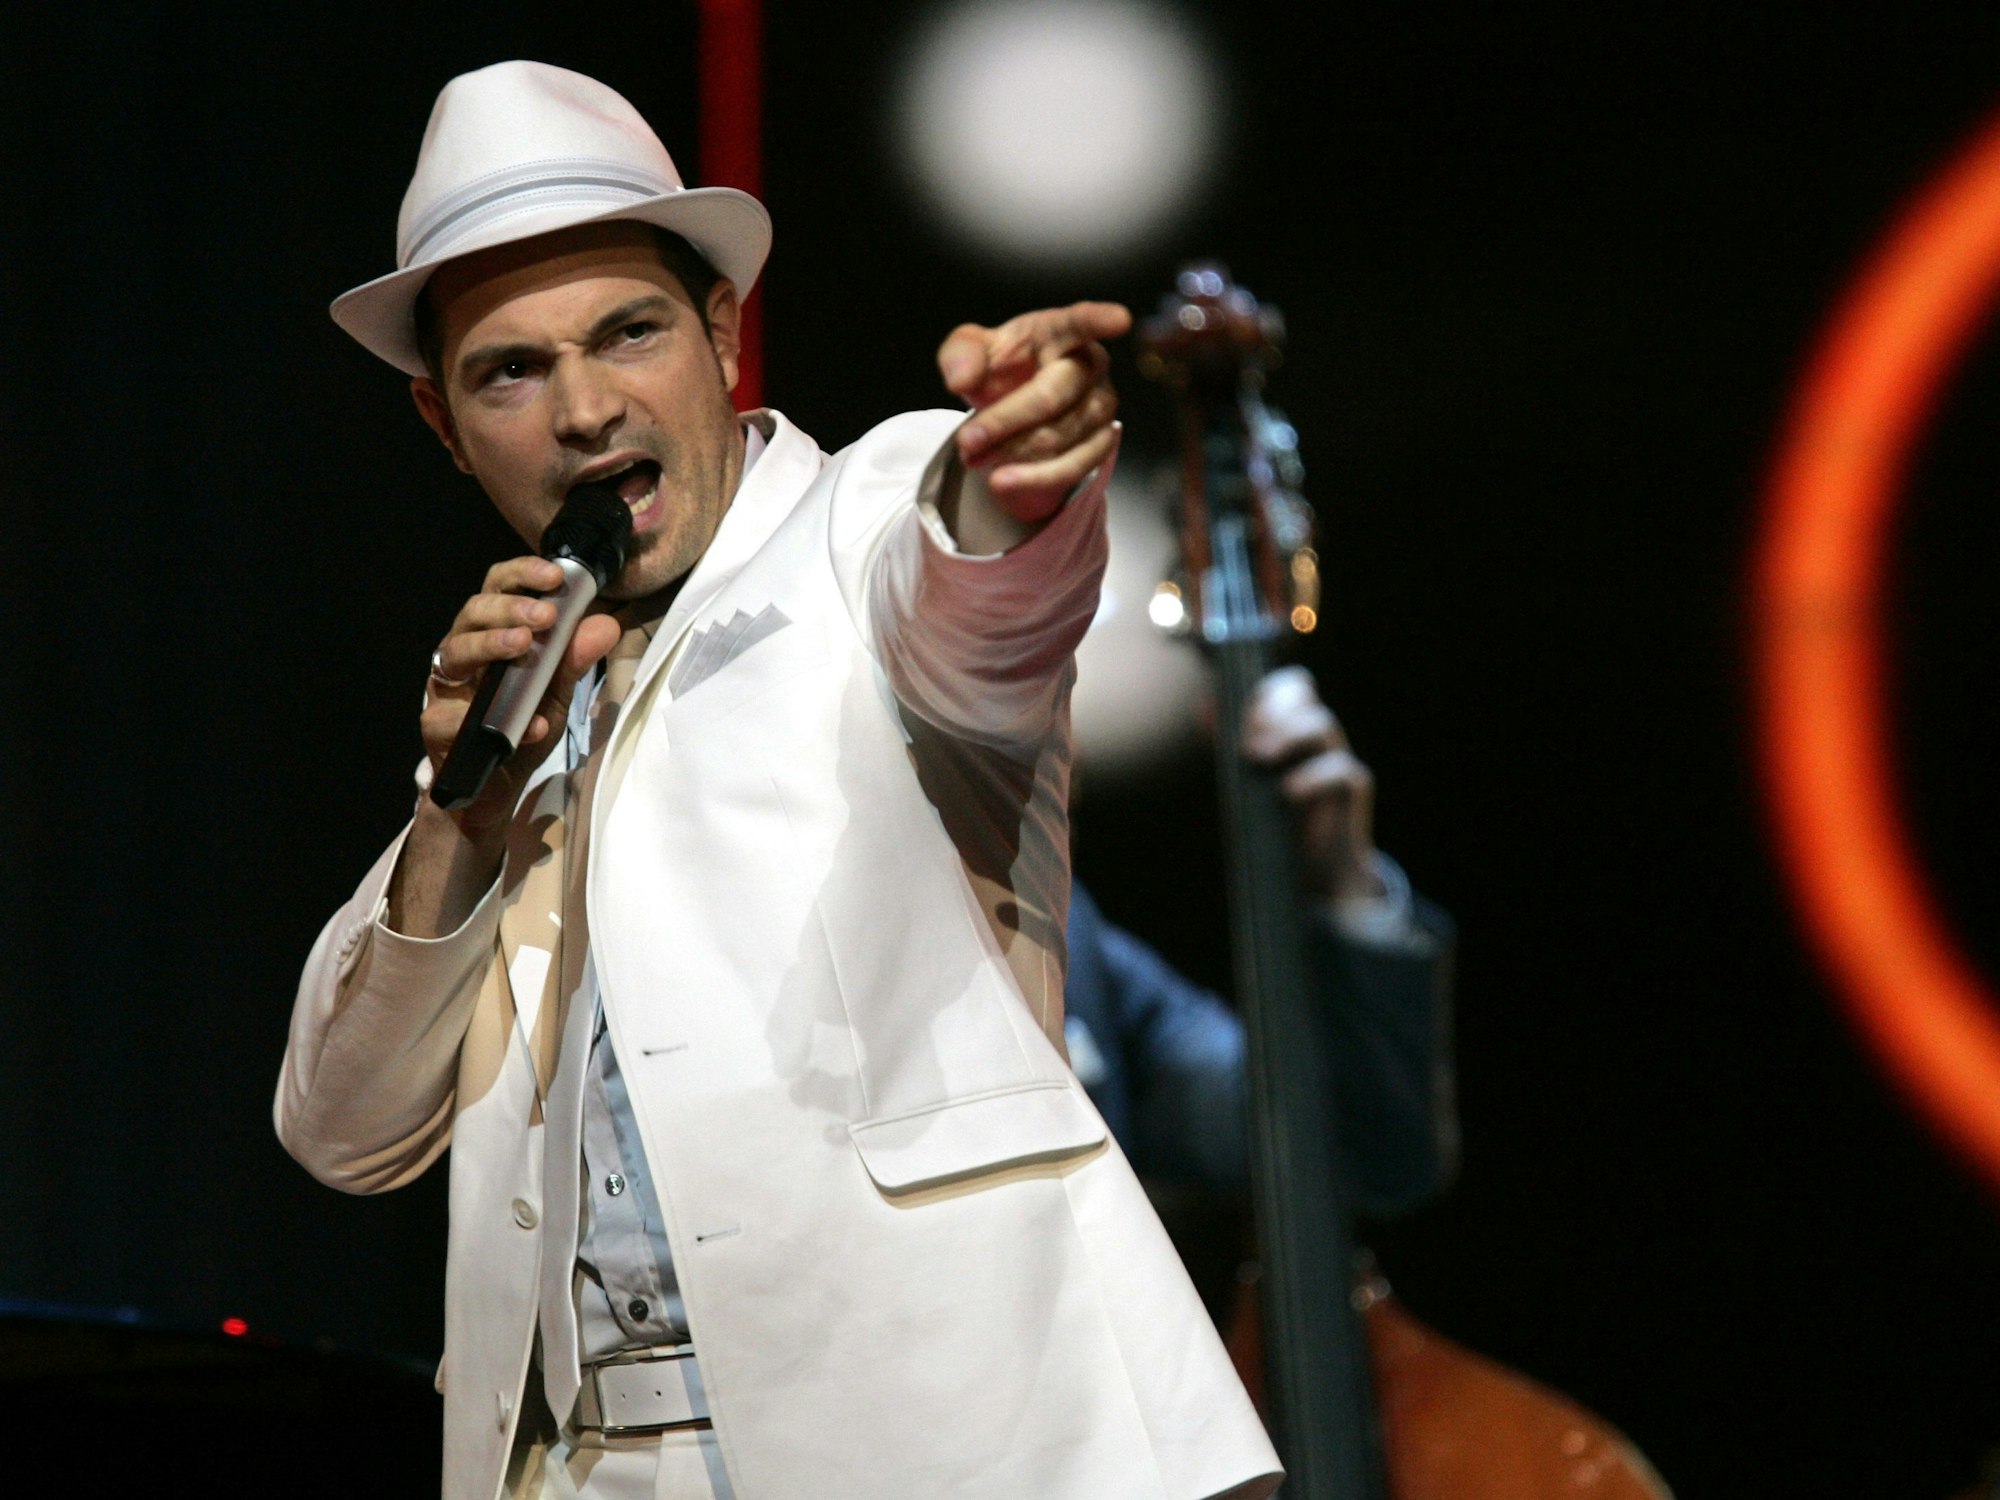 Der Swingmusiker Roger Cicero steht bei der ersten Generalprobe zum Finale des European Song Contests in Helsinki auf der Bühne. Er zeigt mit dem Finger ins Publikum.